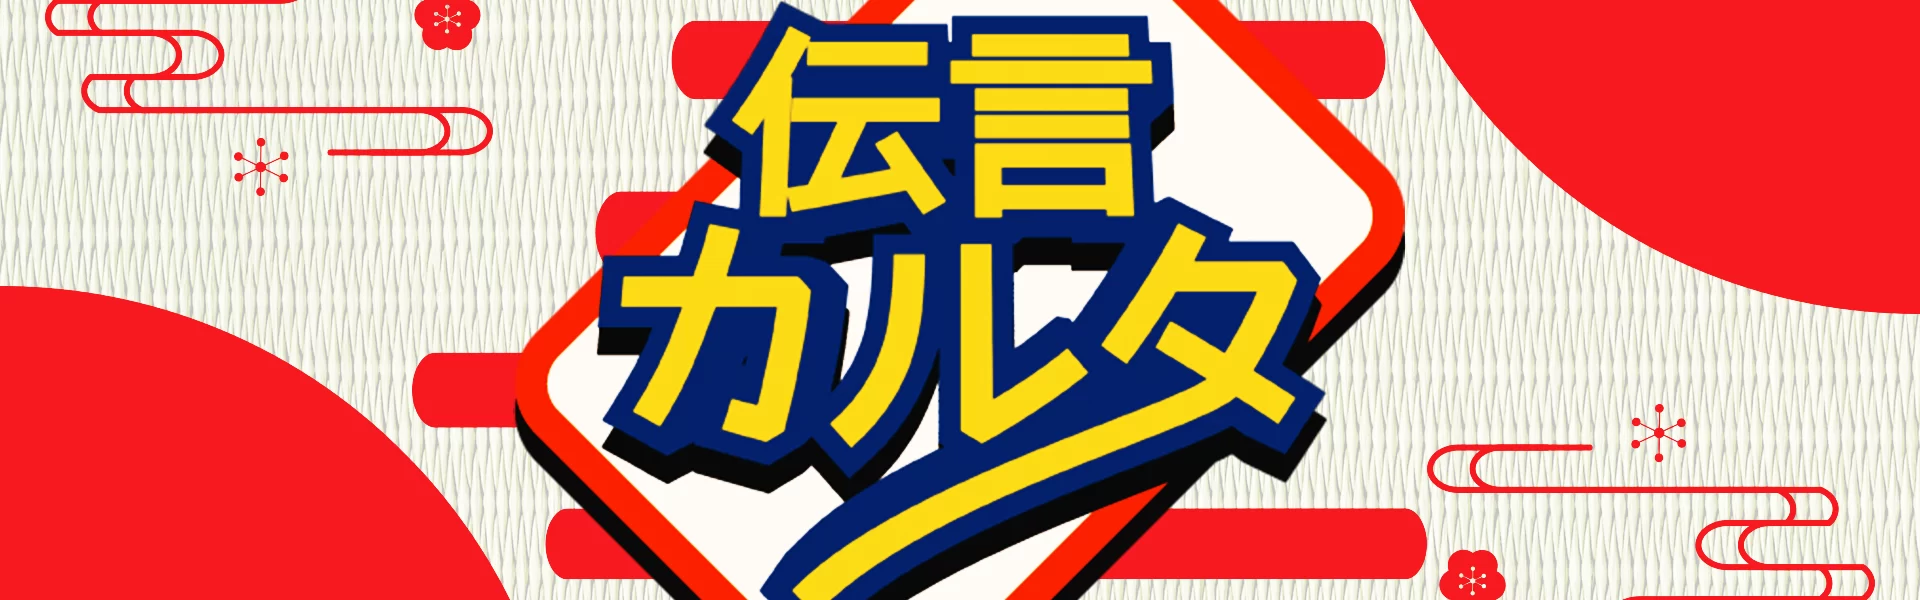 総合コンテンツサイト「竜平堂 (西野竜平)」の伝言ゲームとカルタが合体したカードゲーム「伝言カルタ」のバナー画像